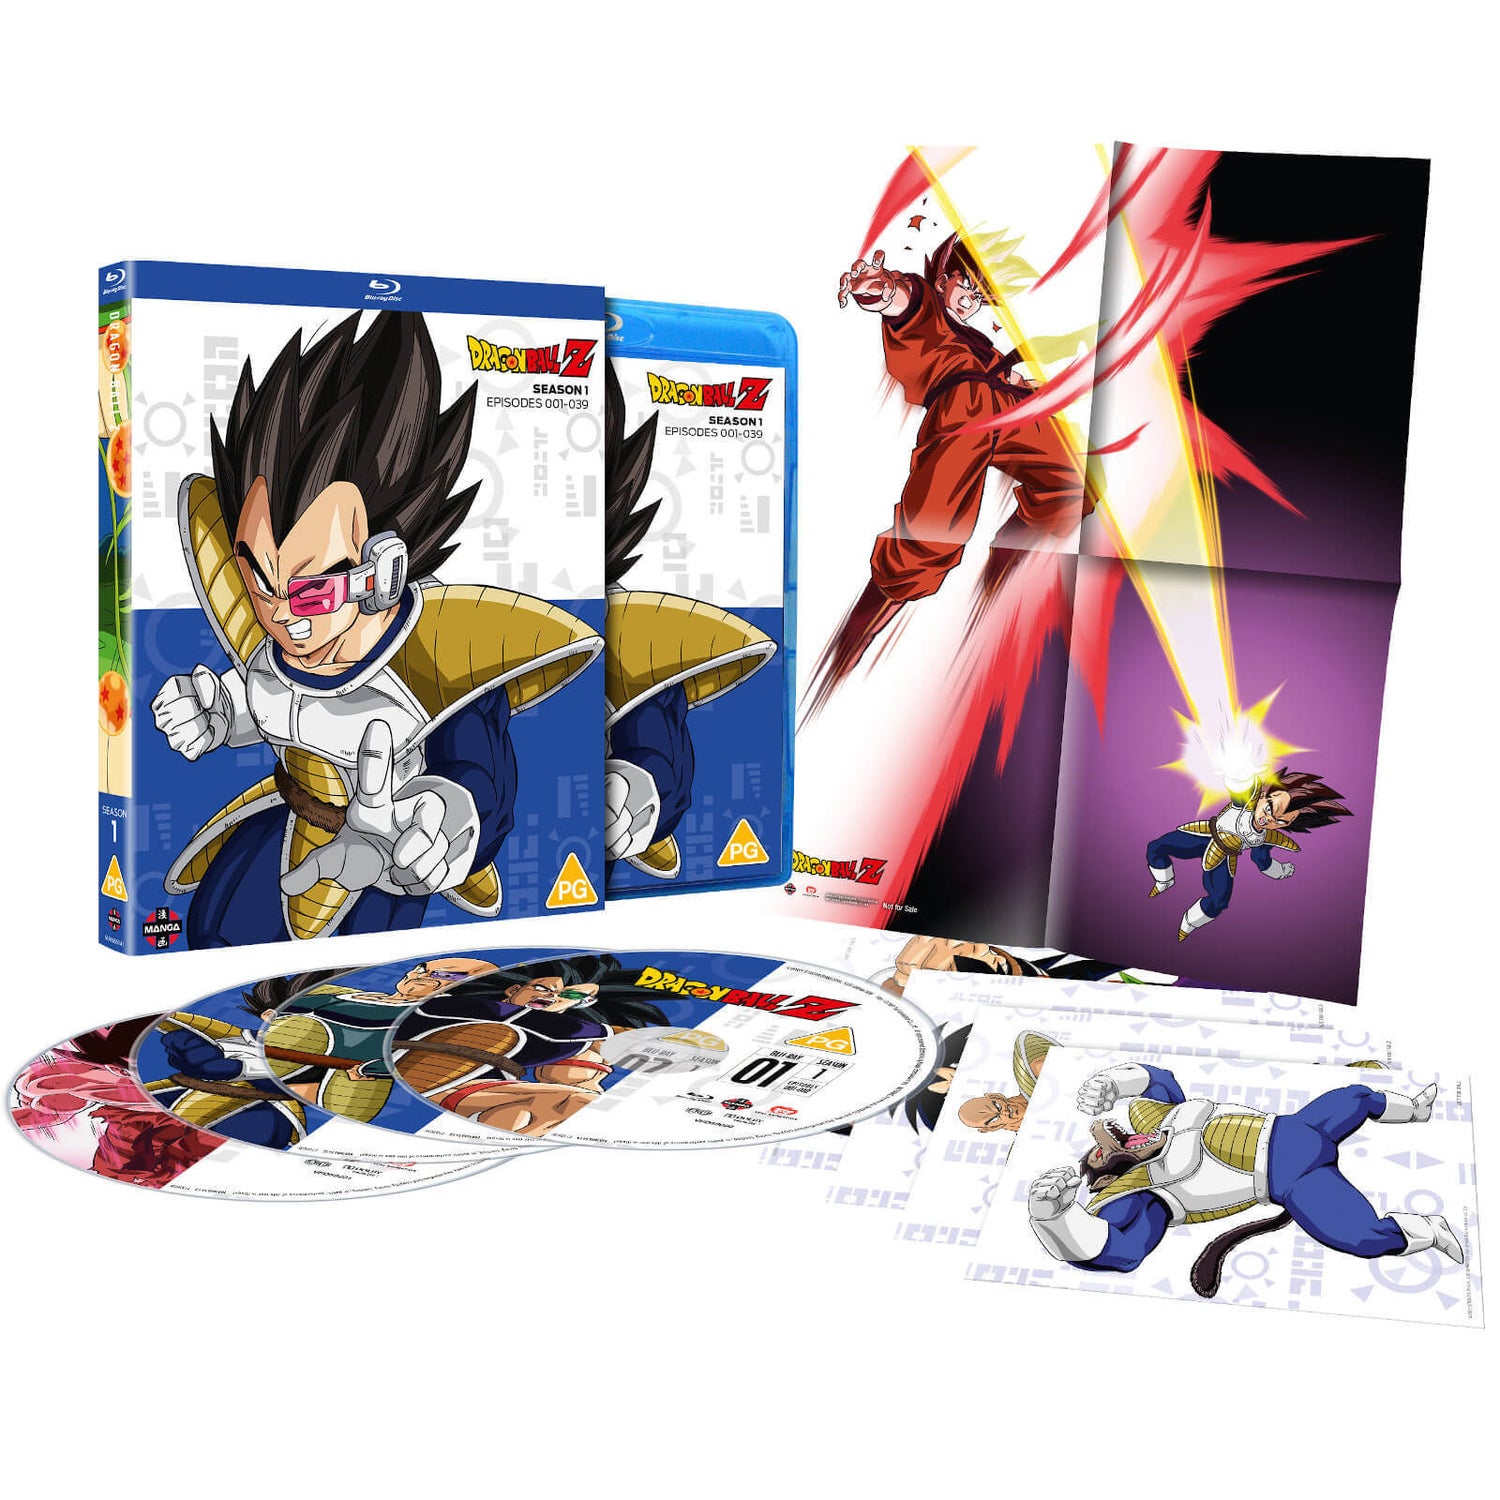 Dragon Ball Z - Season 1: Part 1 (Episodes 1-7) DVD - Zavvi UK